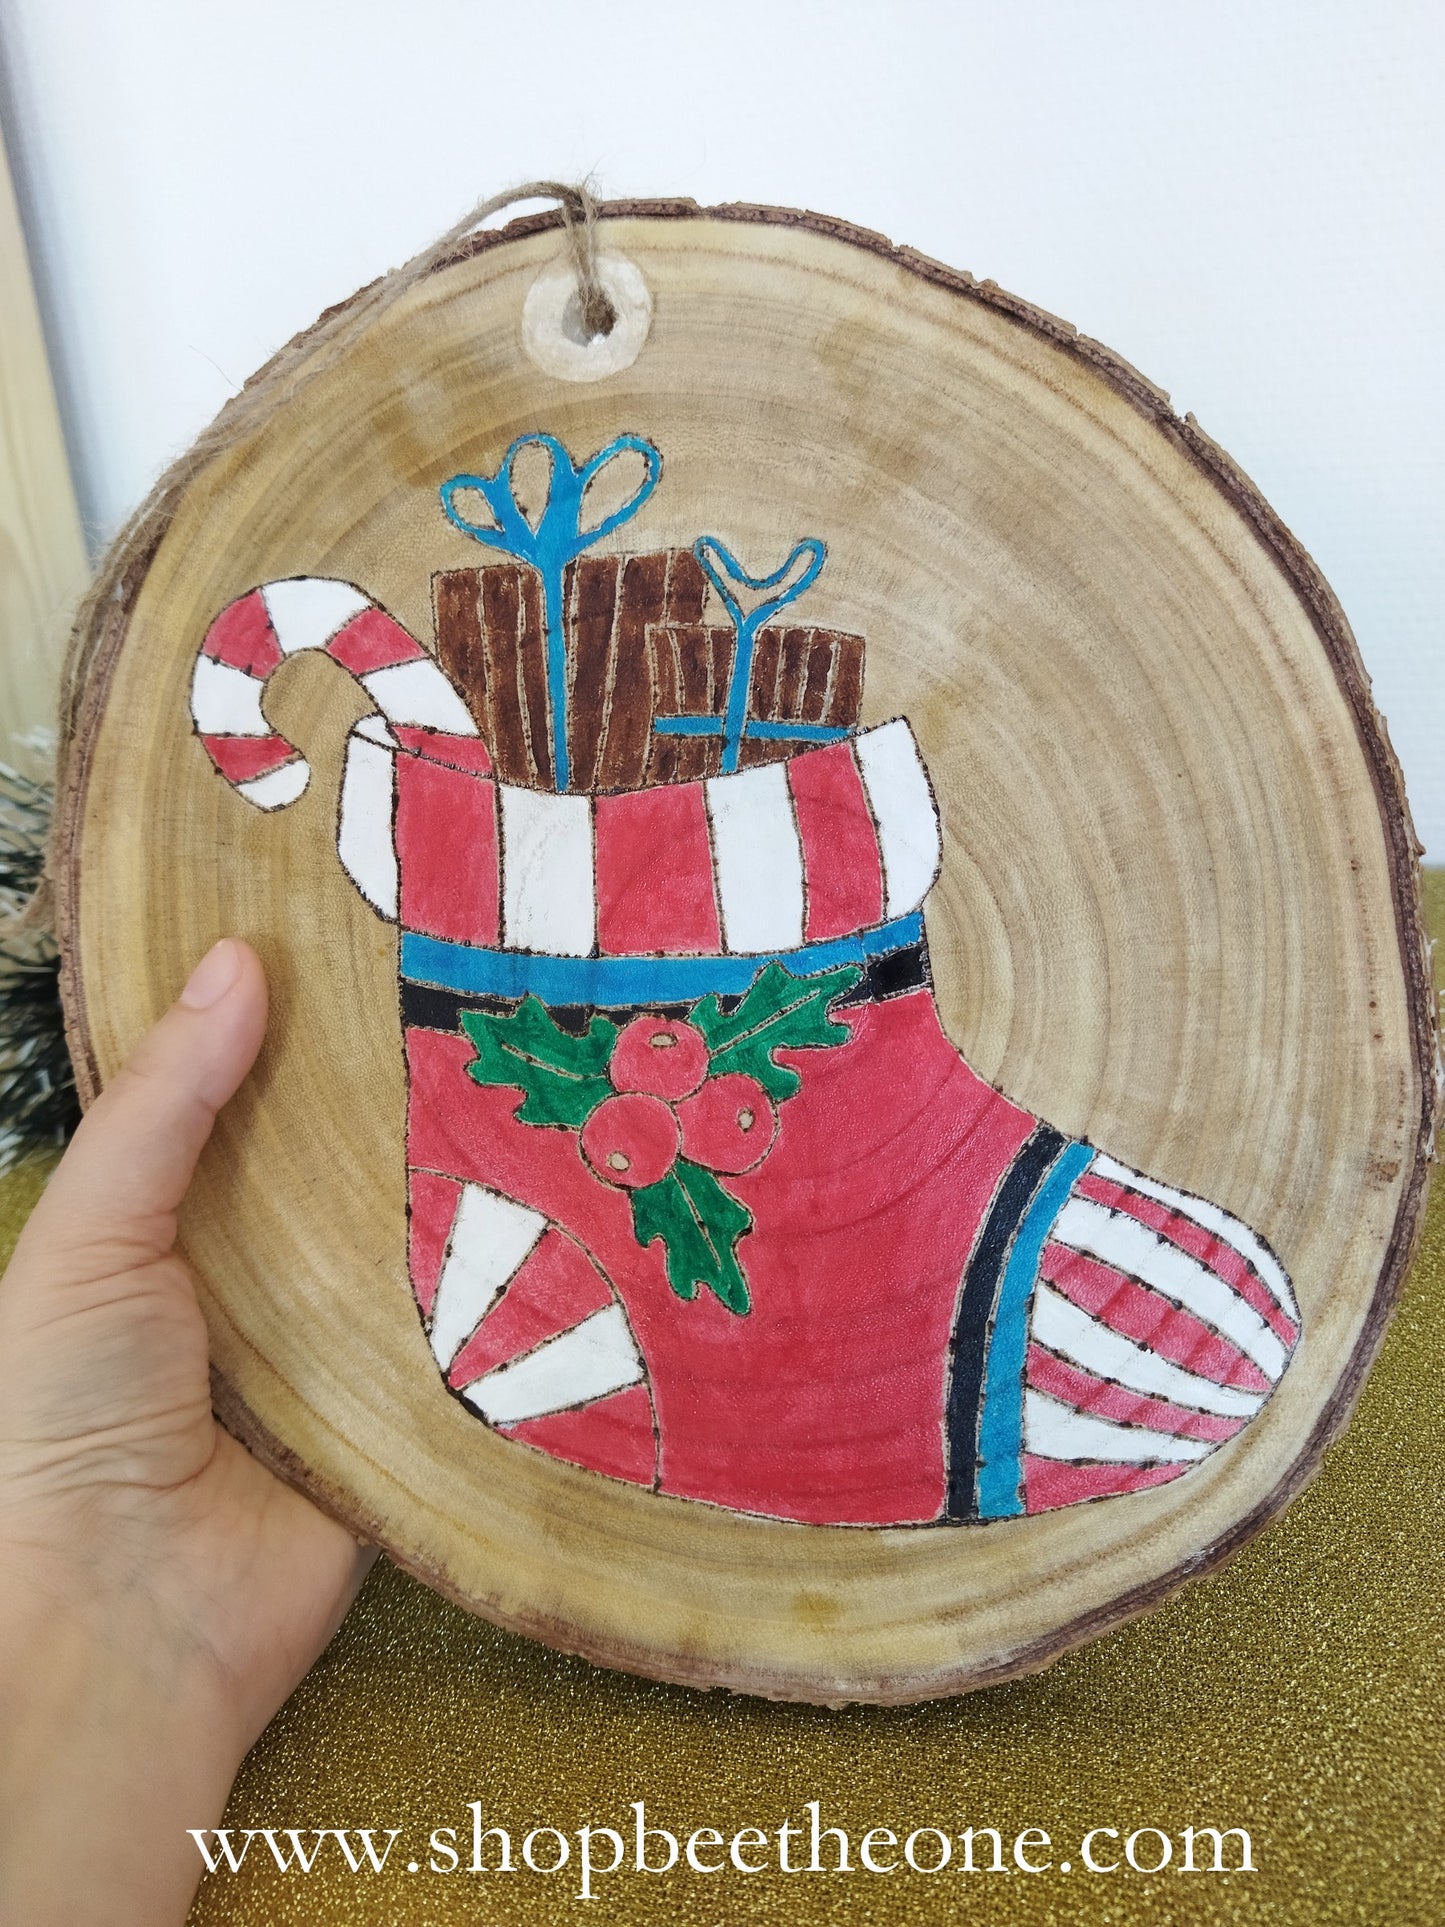 Grands rondins de bois décorés - botte de Noël ou pingouin - à suspendre ou poser